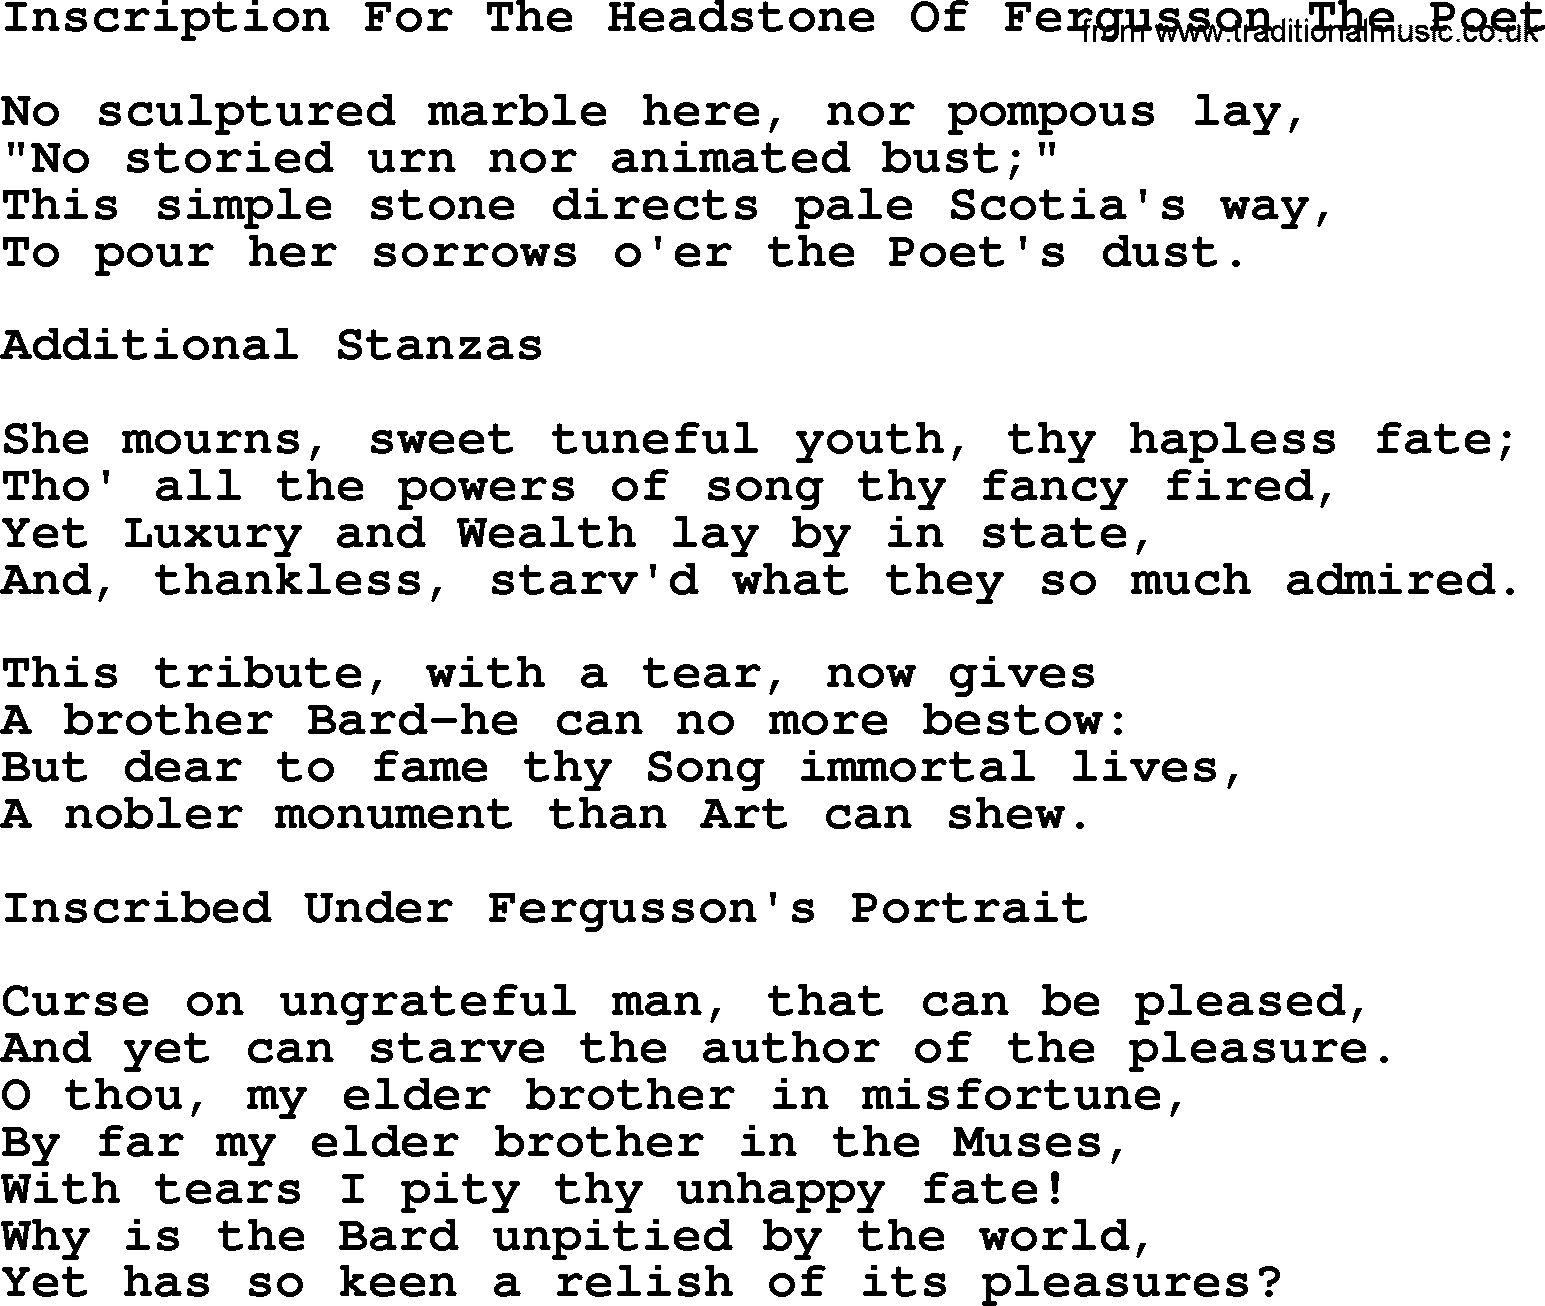 Robert Burns Songs & Lyrics: Inscription For The Headstone Of Fergusson The Poet